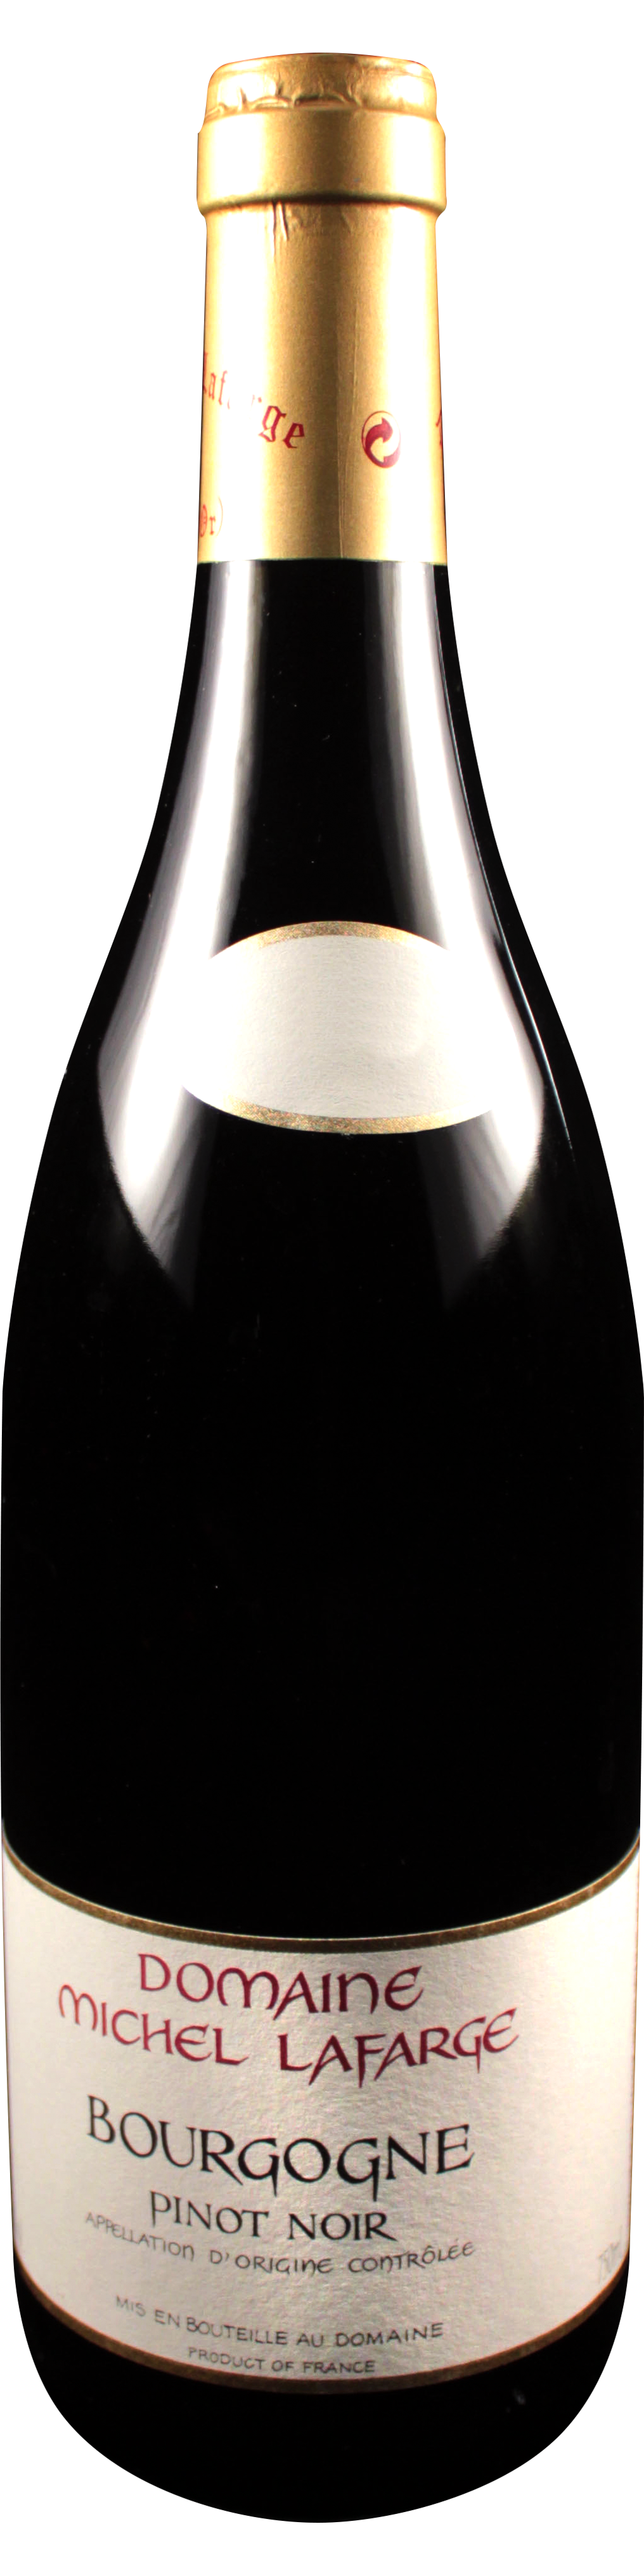 Bottle shot of 2012 Bourgogne Pinot Noir